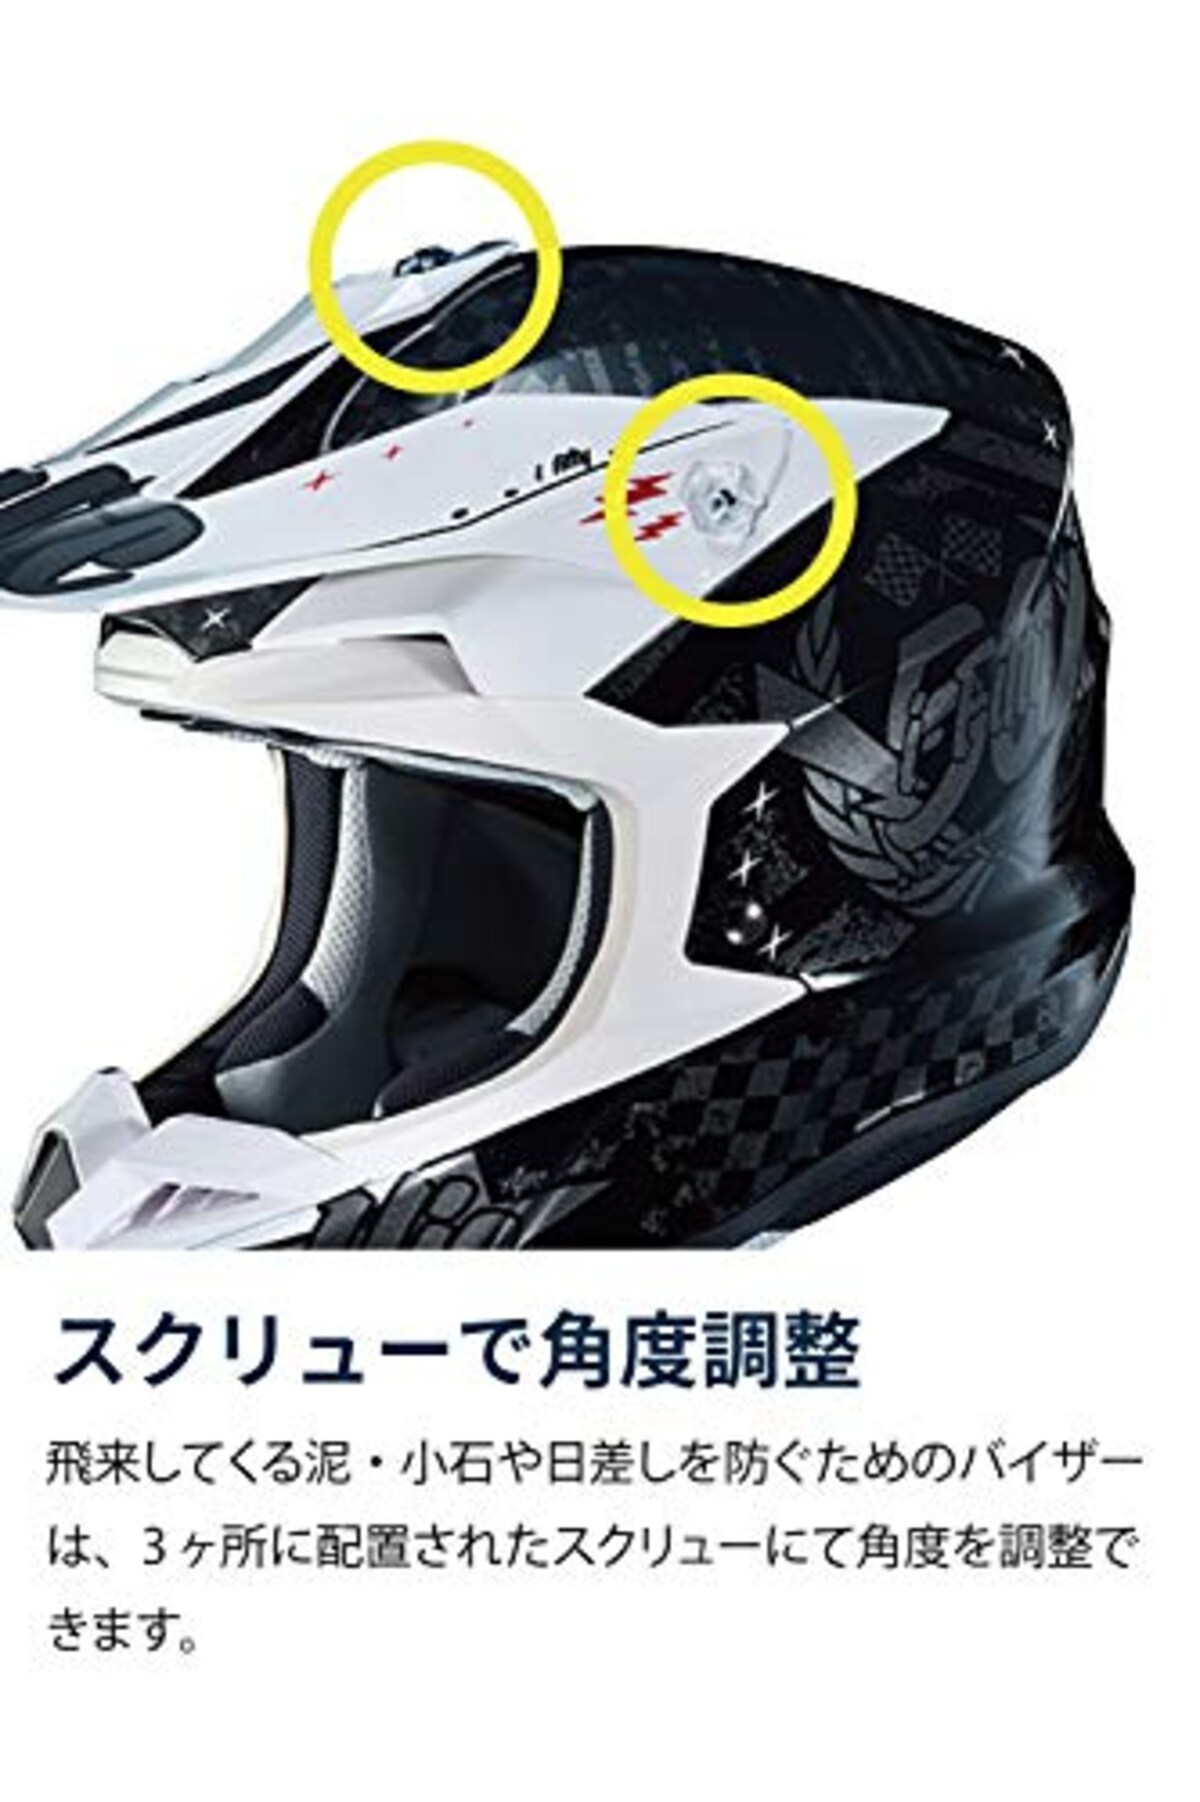  HJC HELMETS(エイチジェイシーヘルメット) バイクヘルメット オフロード i50 ARTAX(アルタクス) HJH198 BLACK/FLUO YELLOW(MC4H) (サイズ:XL)画像4 